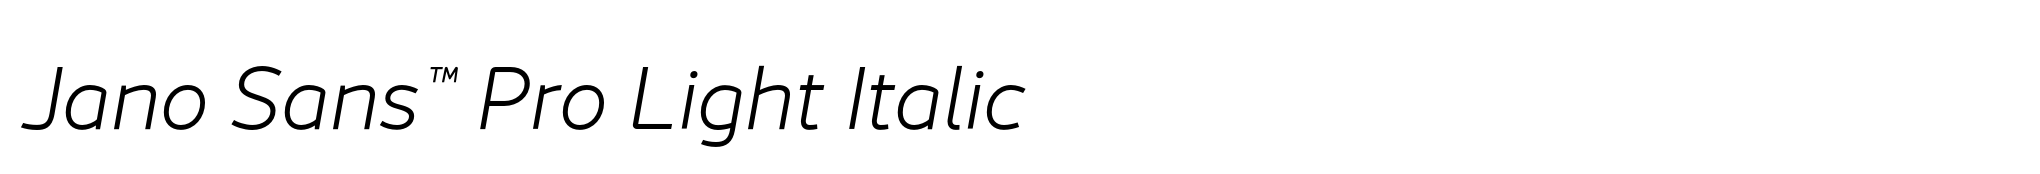 Jano Sans™ Pro Light Italic image